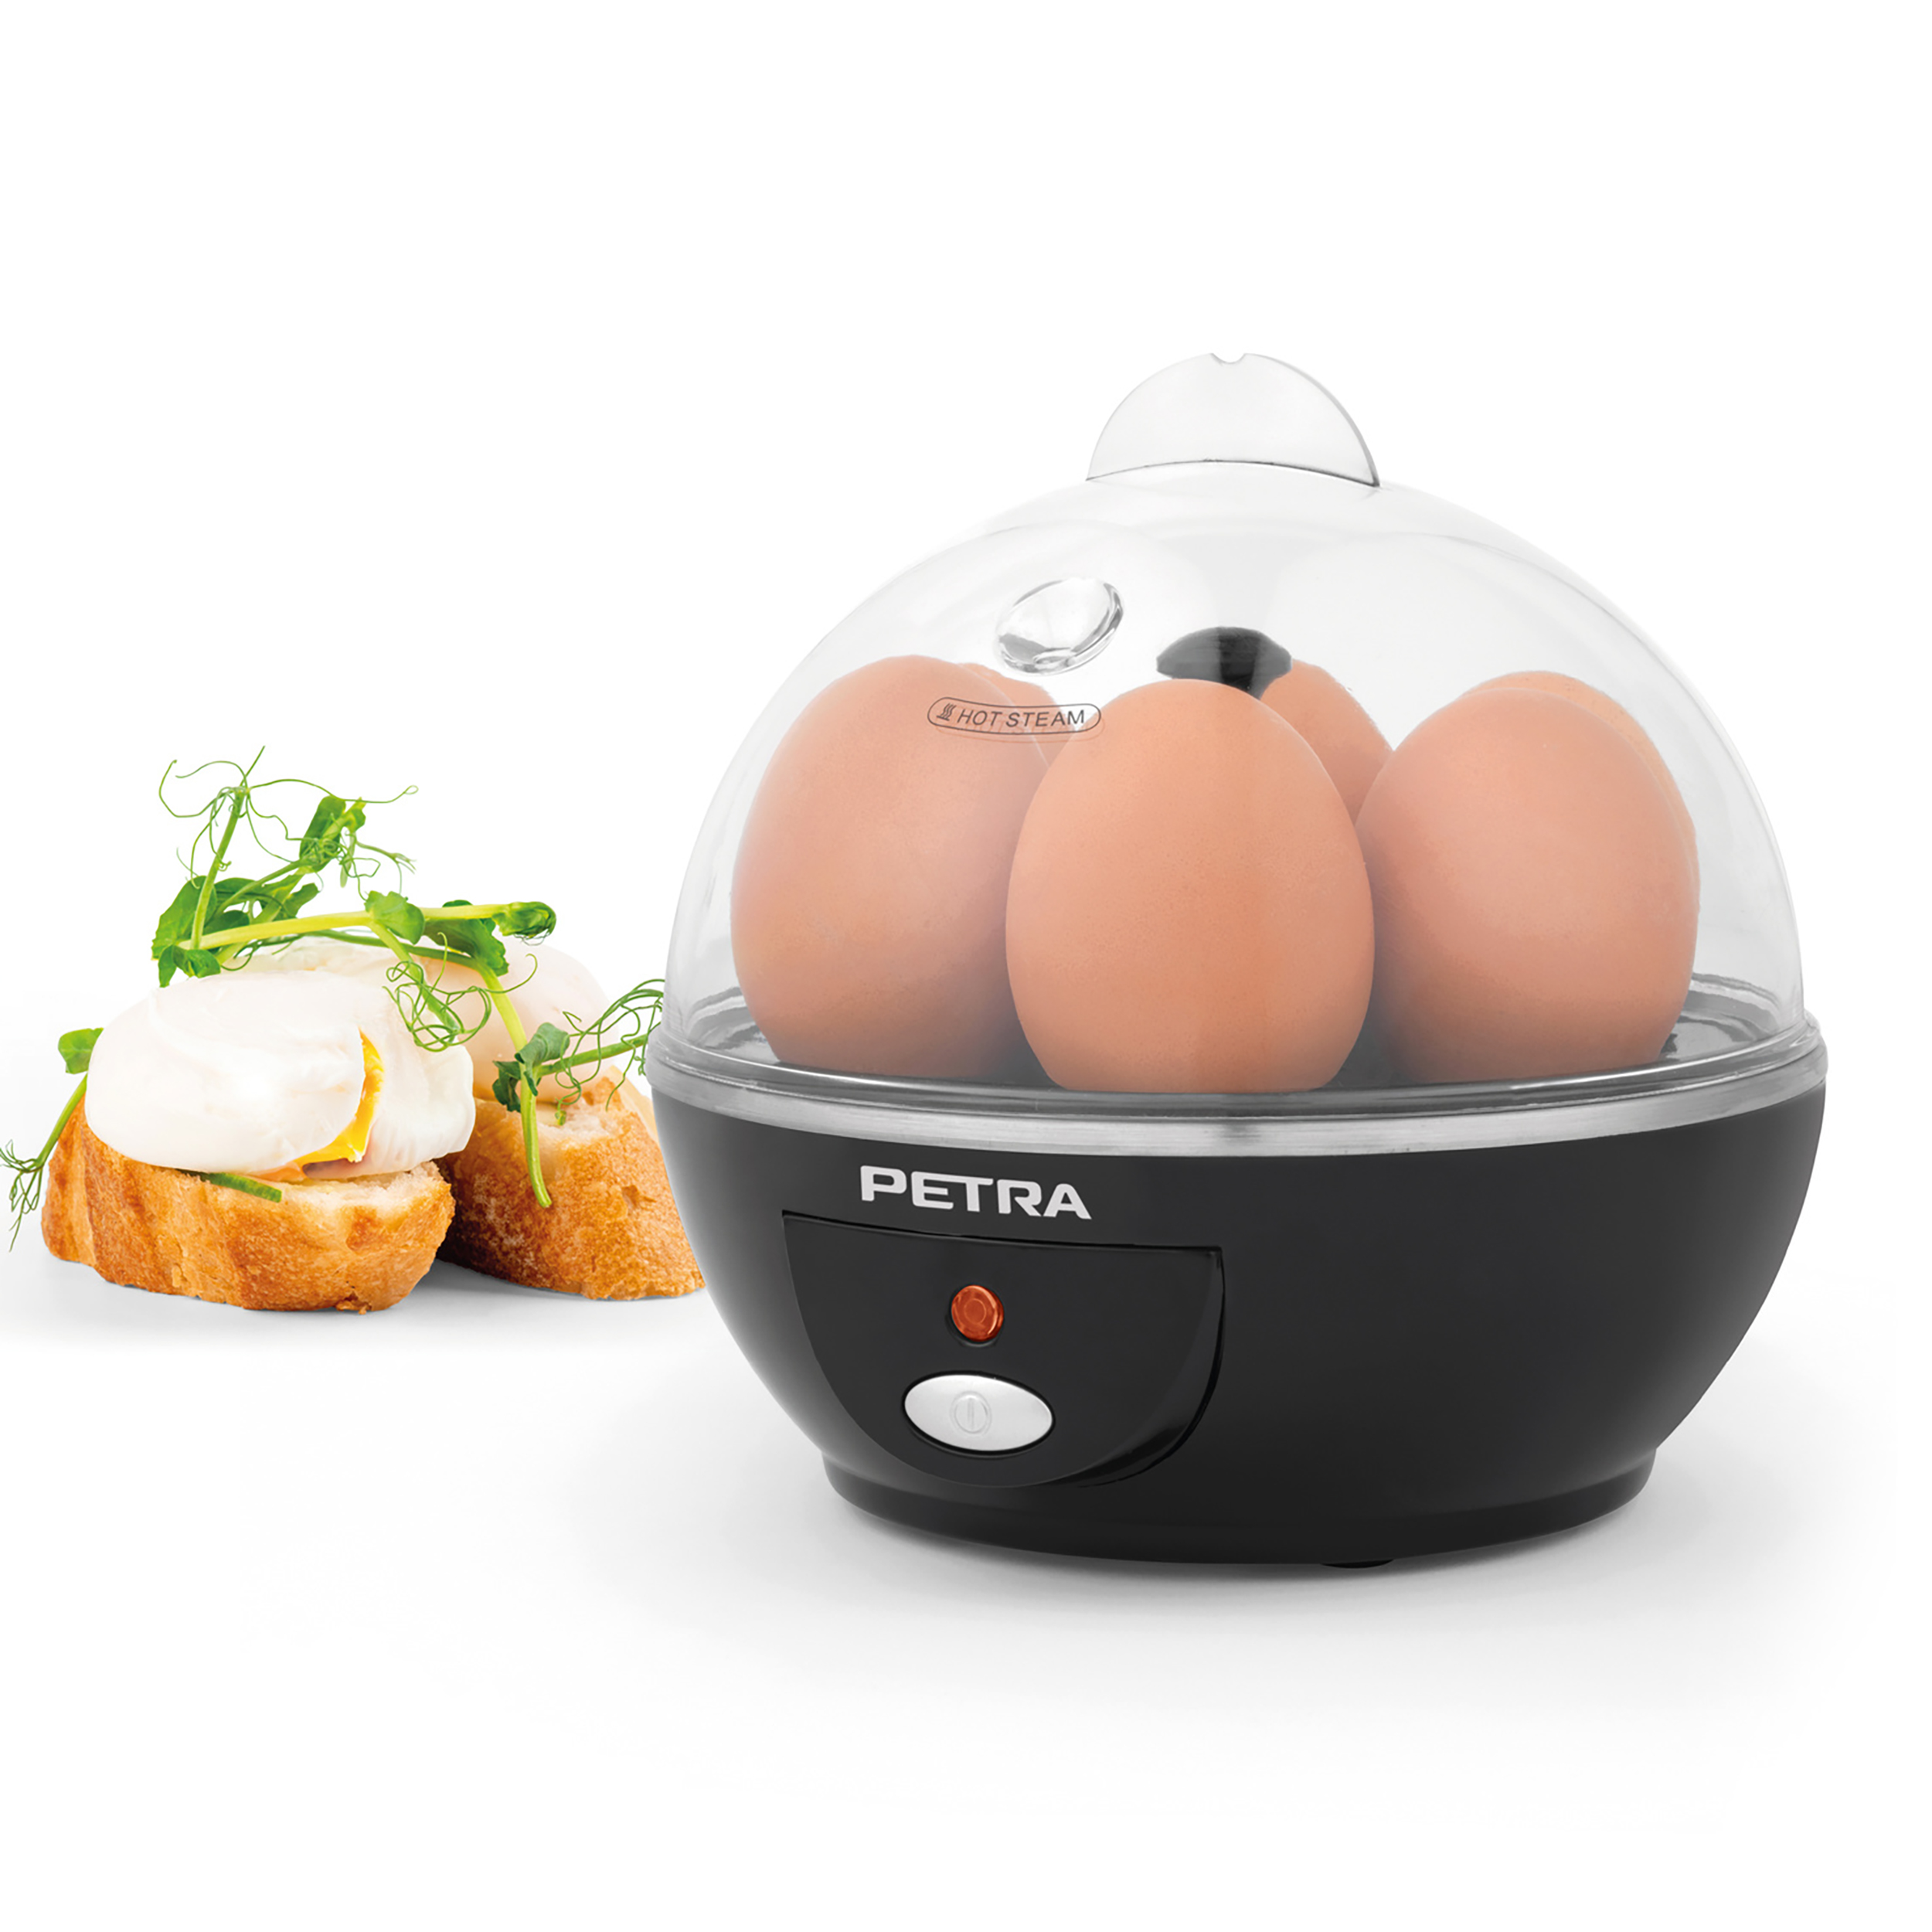 PETRA Elektrischer Pochieren, Eierkocher(Anzahl Eier: 6) für Omelett - Spülmaschinenfest 6 Eier Rührei, Eierkocher - Kochen